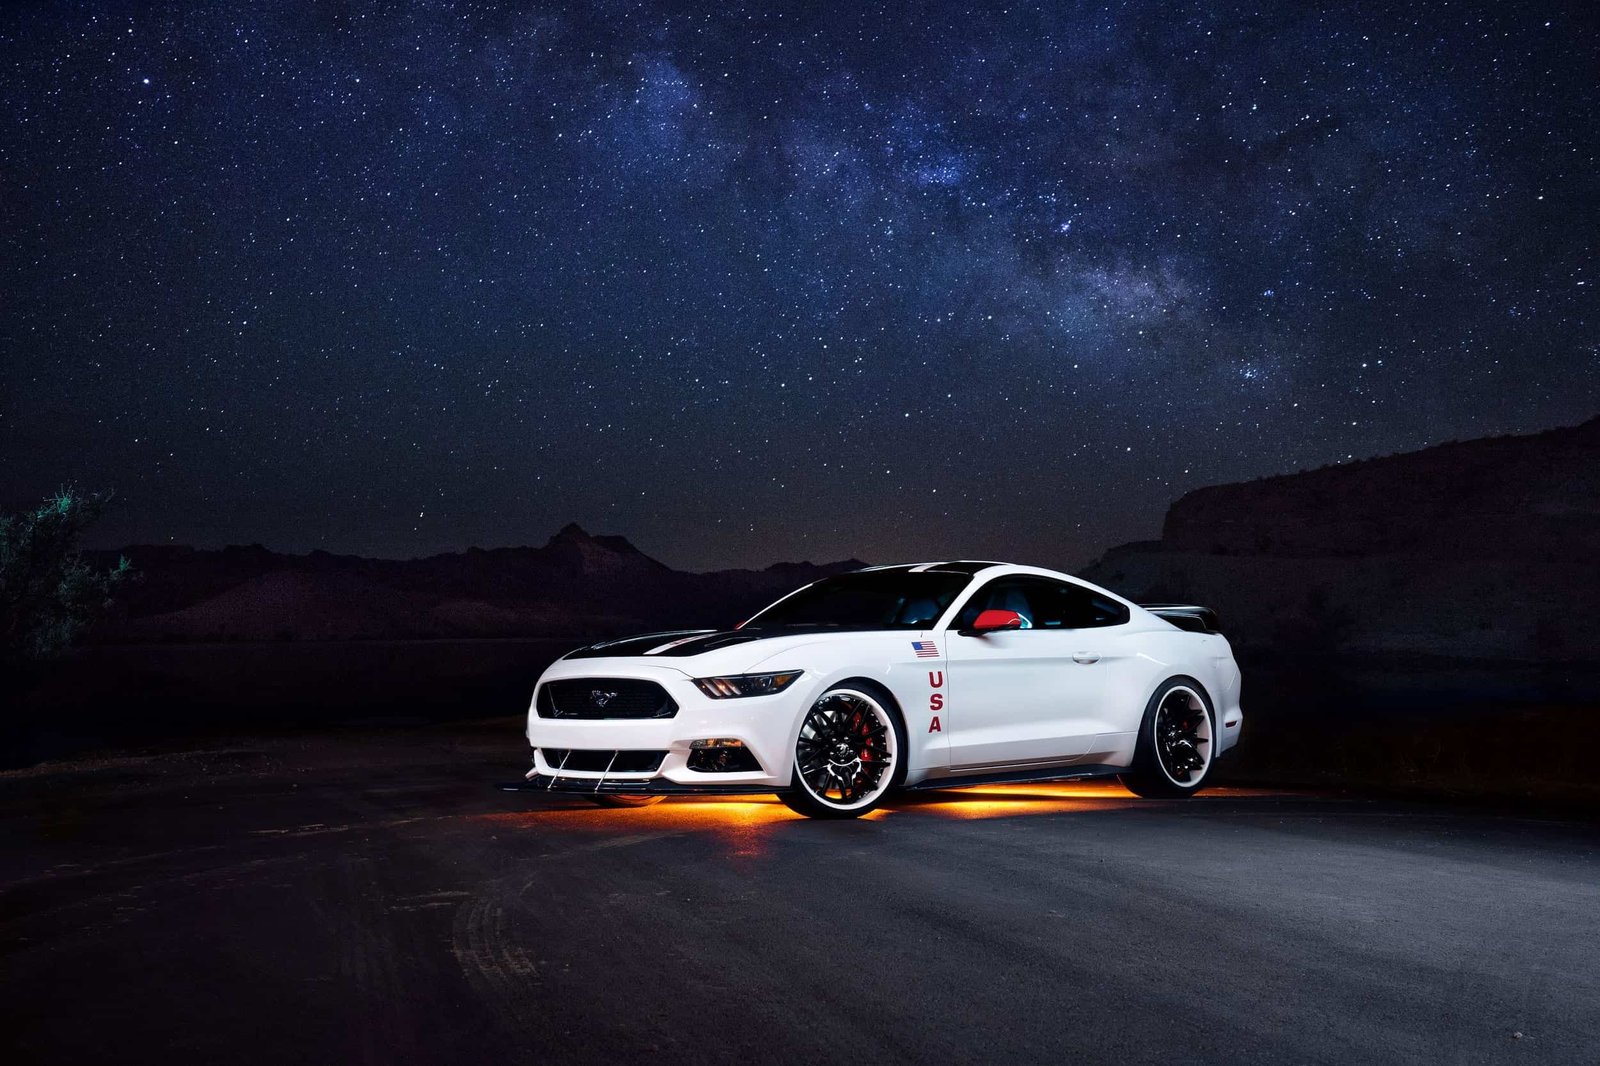 Ford Mustang Apollo Edition, destination lune!